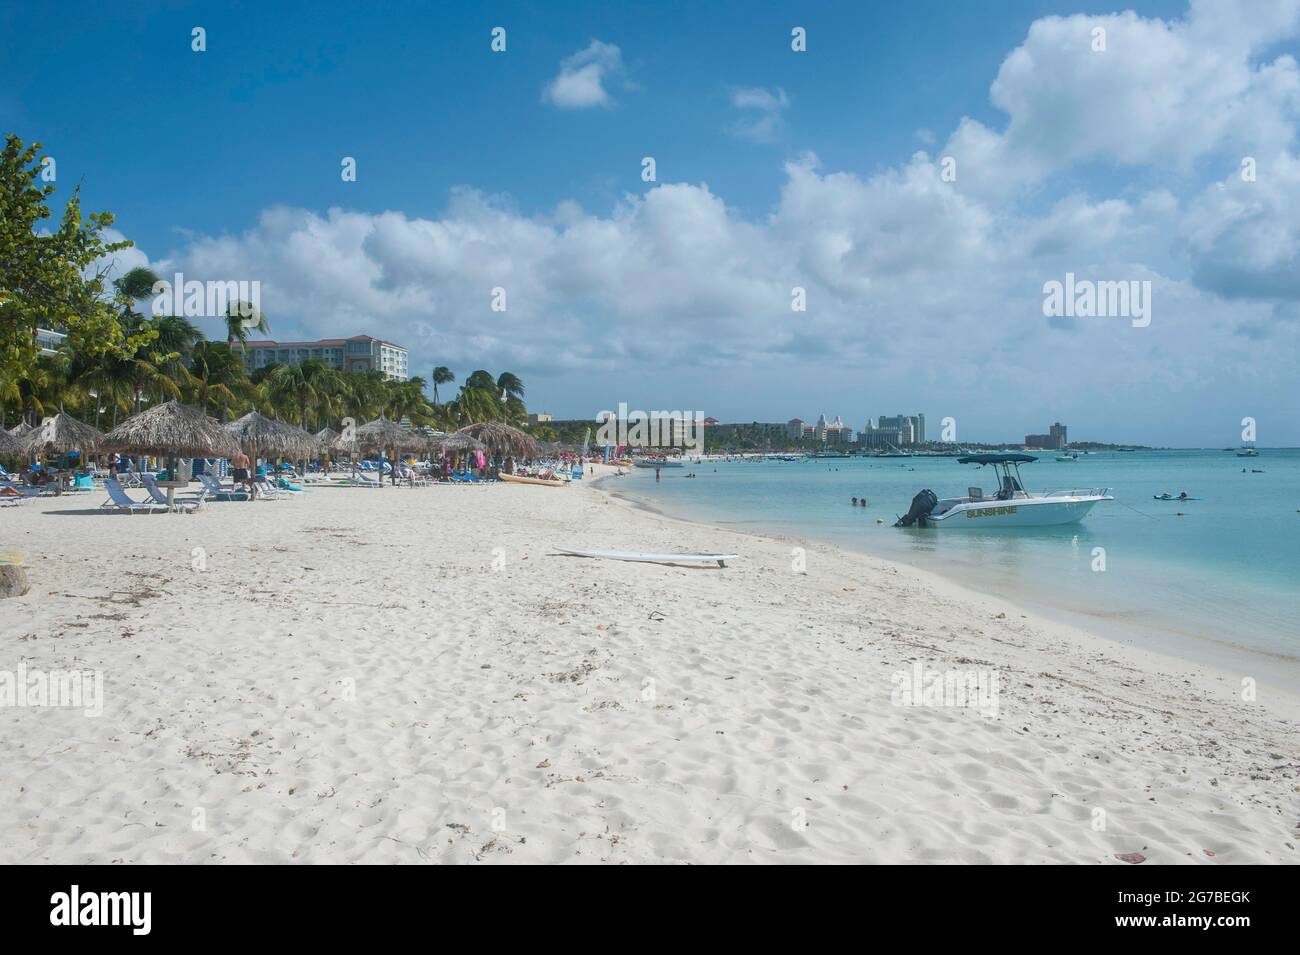 Eau turquoise et sable blanc Plage d'Arashi, Aruba, Iles ABC, antilles néerlandaises, Caraïbes Banque D'Images